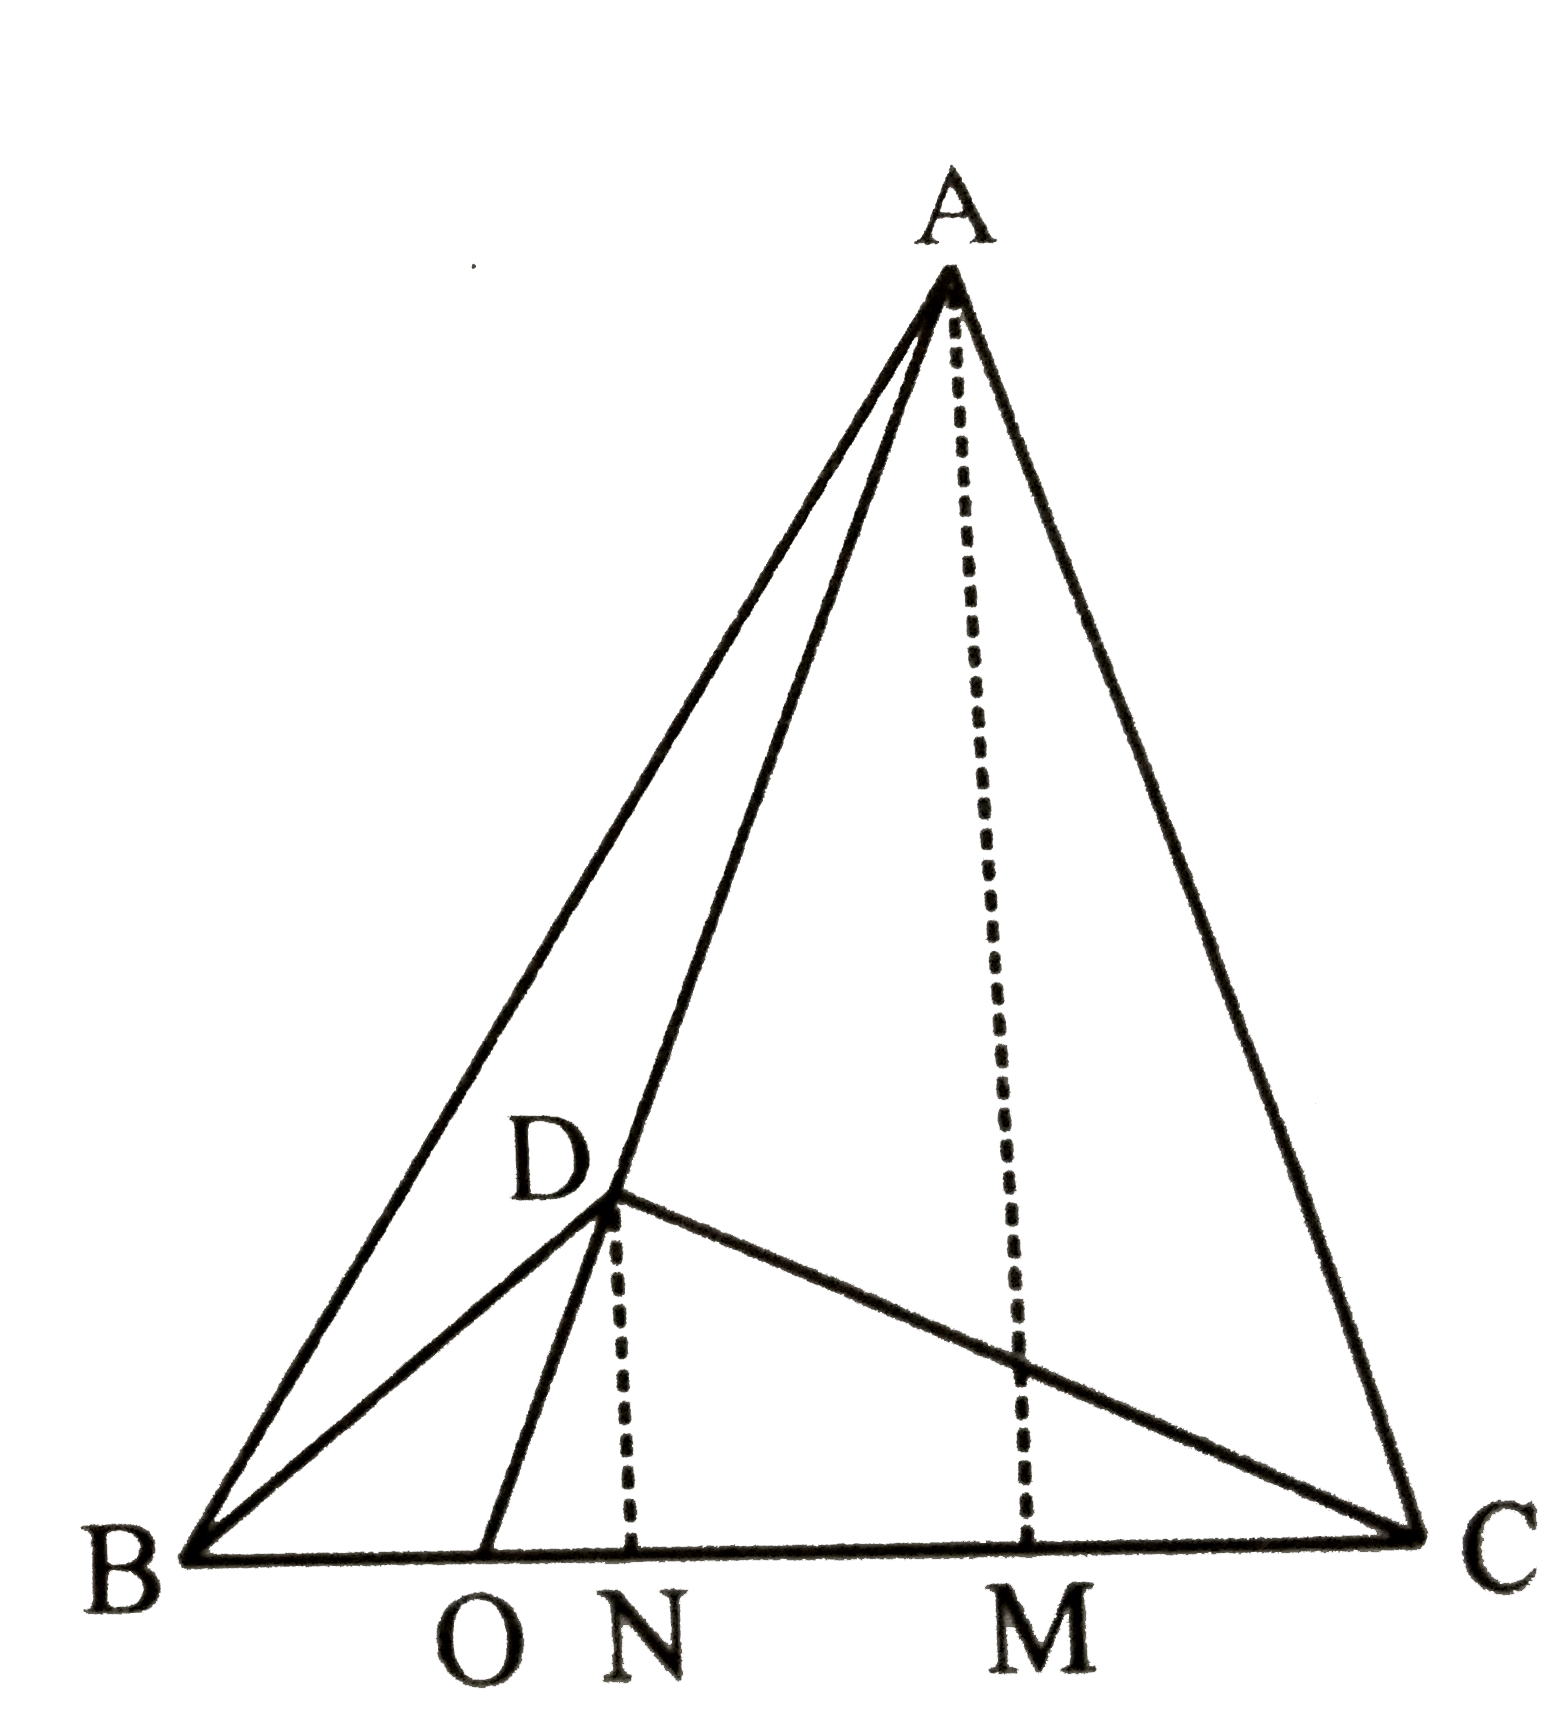 दिये गये चित्र में, दो त्रिभुज ABC तथा DBC एक  ही आधार पर स्थित है | यदि AD, BC, को O पर प्रतिच्छेद करती है तो दिखाइए कि,    ((triangle ABC)